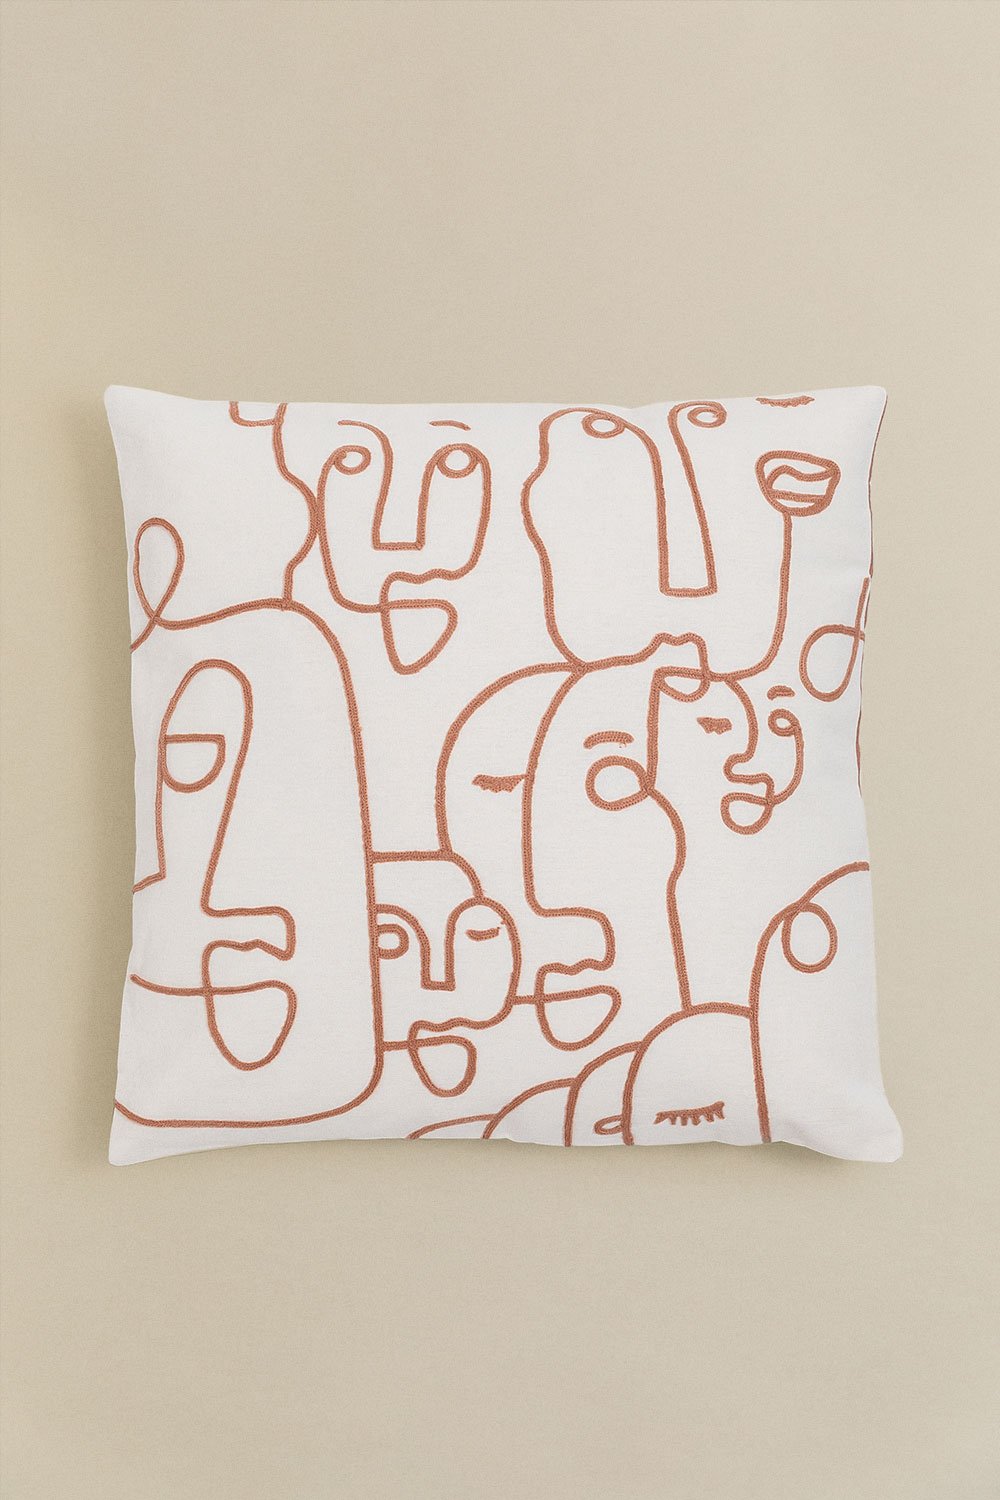 Cuscino quadrato in cotone (45x45 cm) Mume, immagine della galleria 1